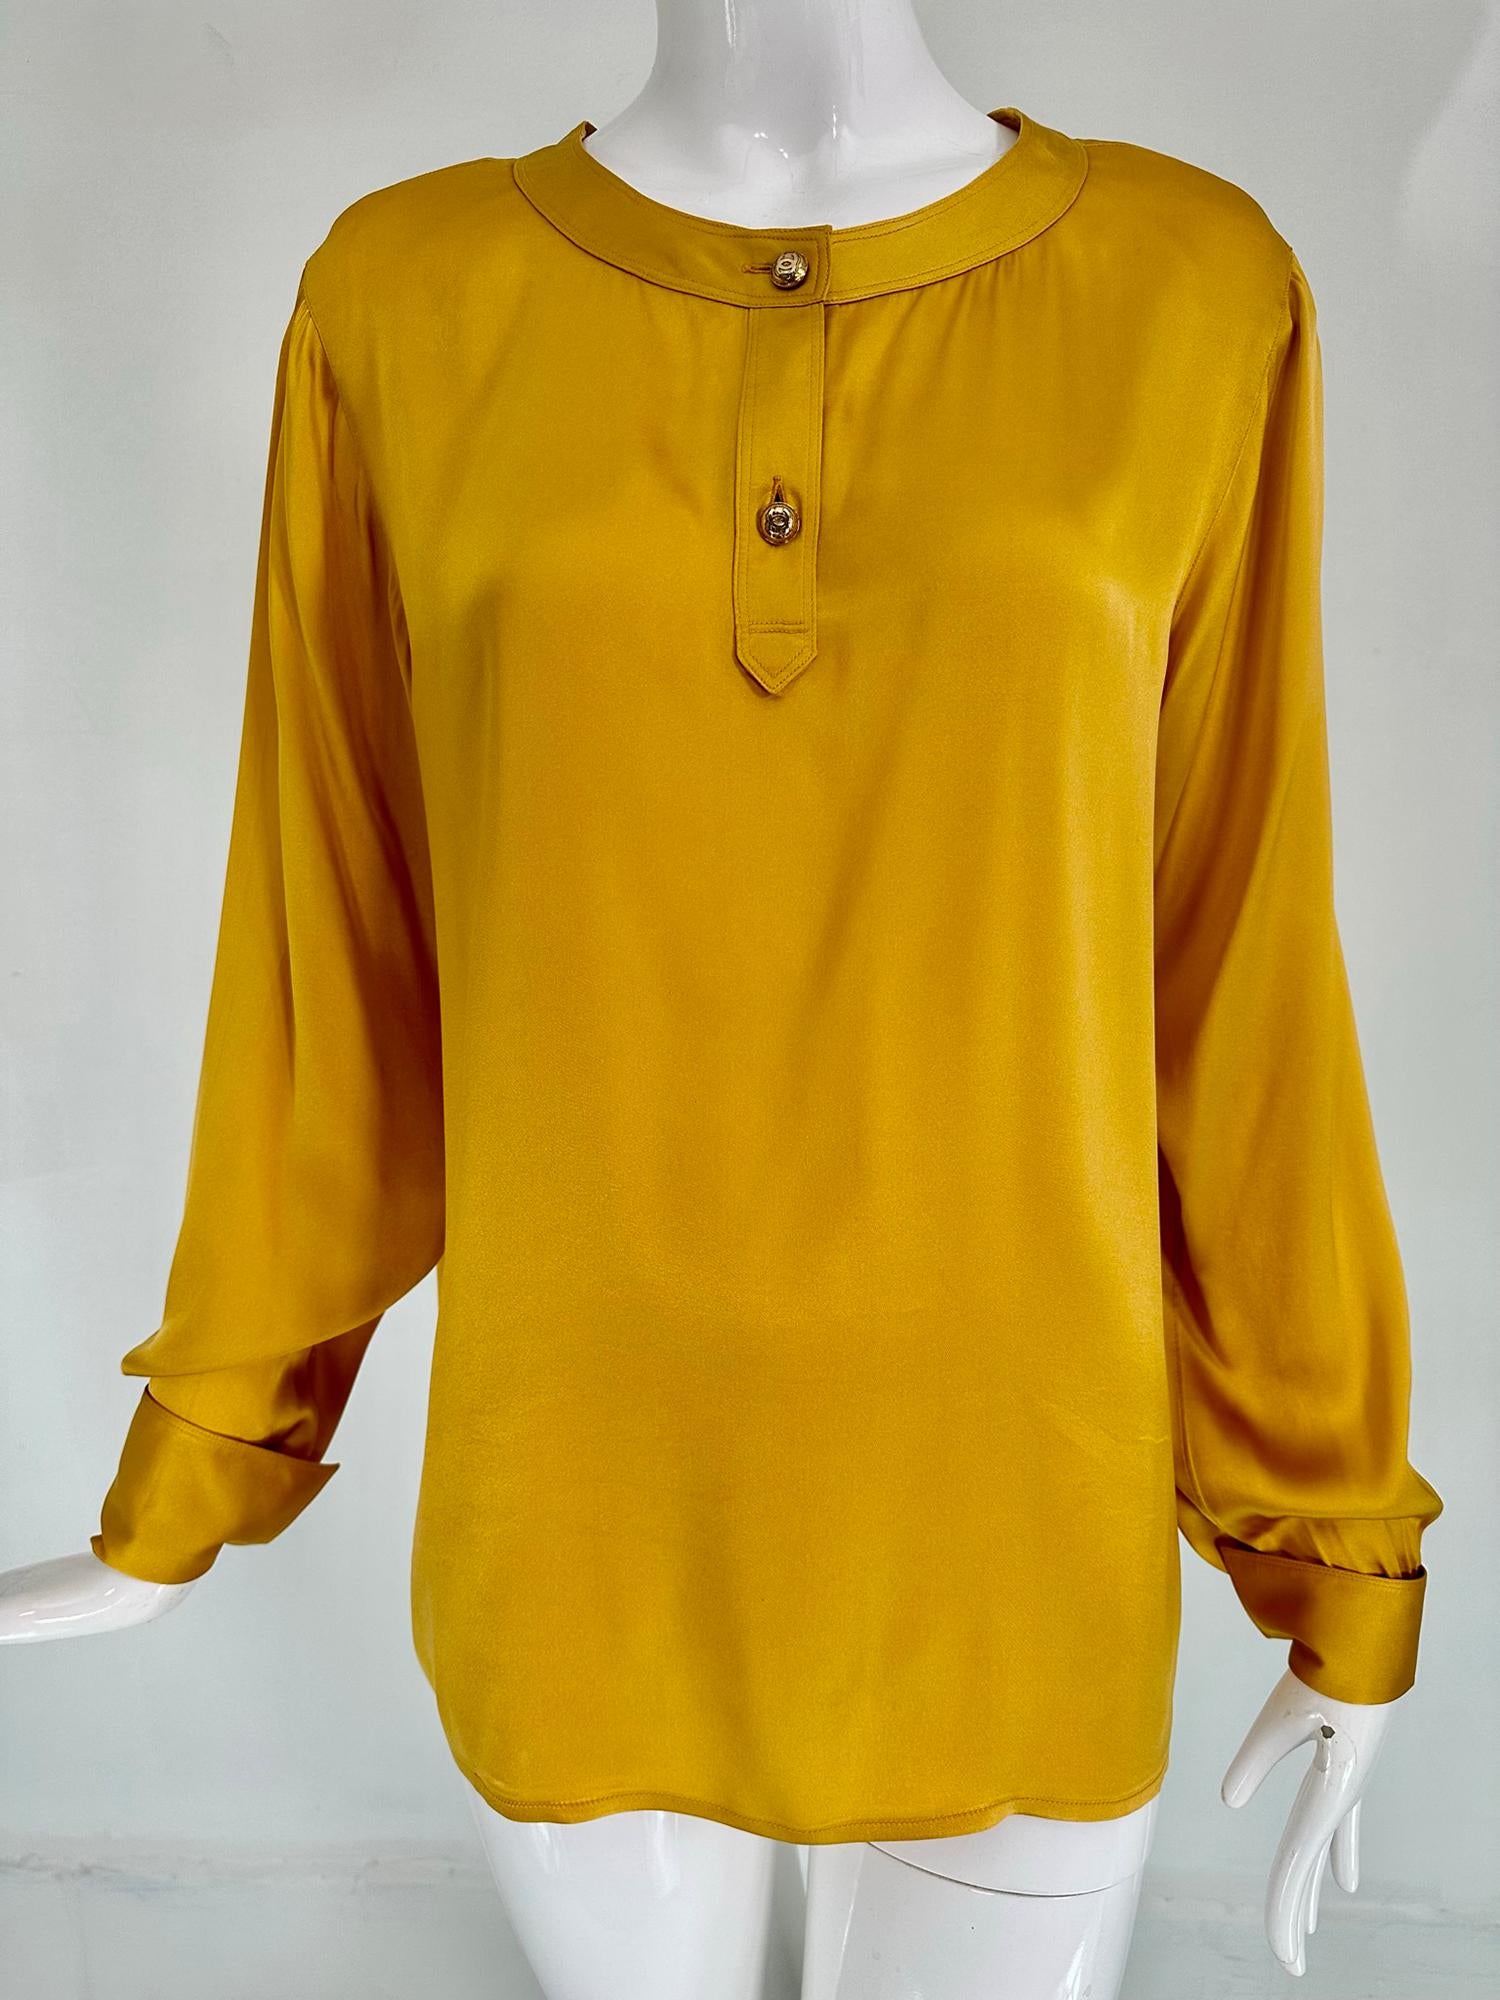 Chanel goldfarbene Seidensatin-Bluse mit flachem Kragen und langen Ärmeln aus den 1990er Jahren. Schöne Seidensatinbluse mit Knopfleiste und zwei goldenen Chanel-Logoknöpfen. Die langen Ärmel haben französische Manschetten, Sie benötigen